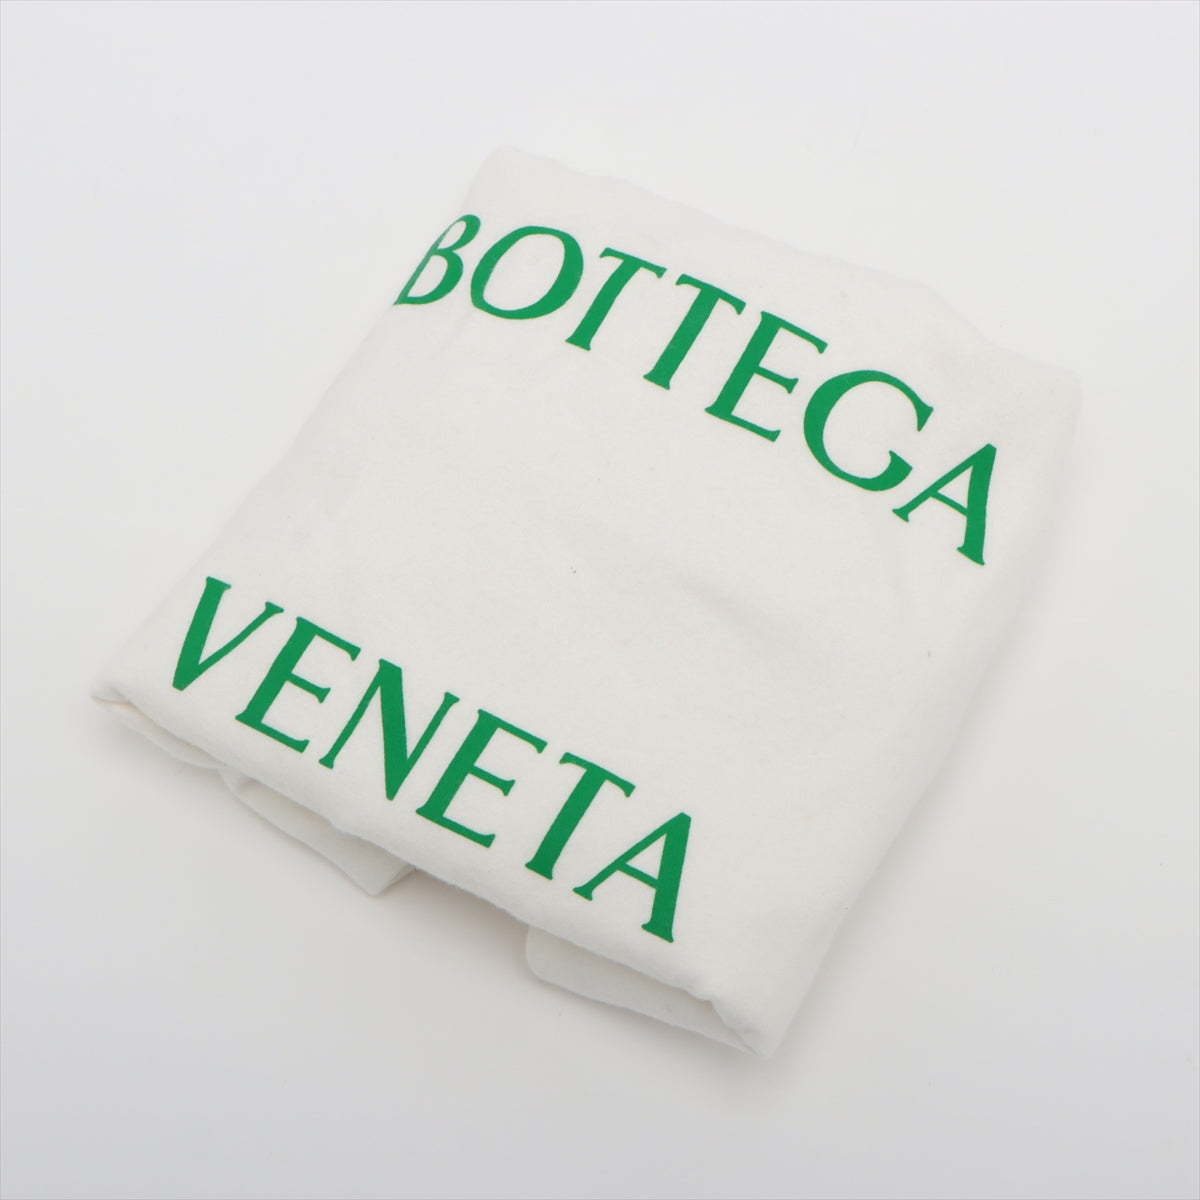 Bottega Veneta Mini Twisted Leather Handbag Black